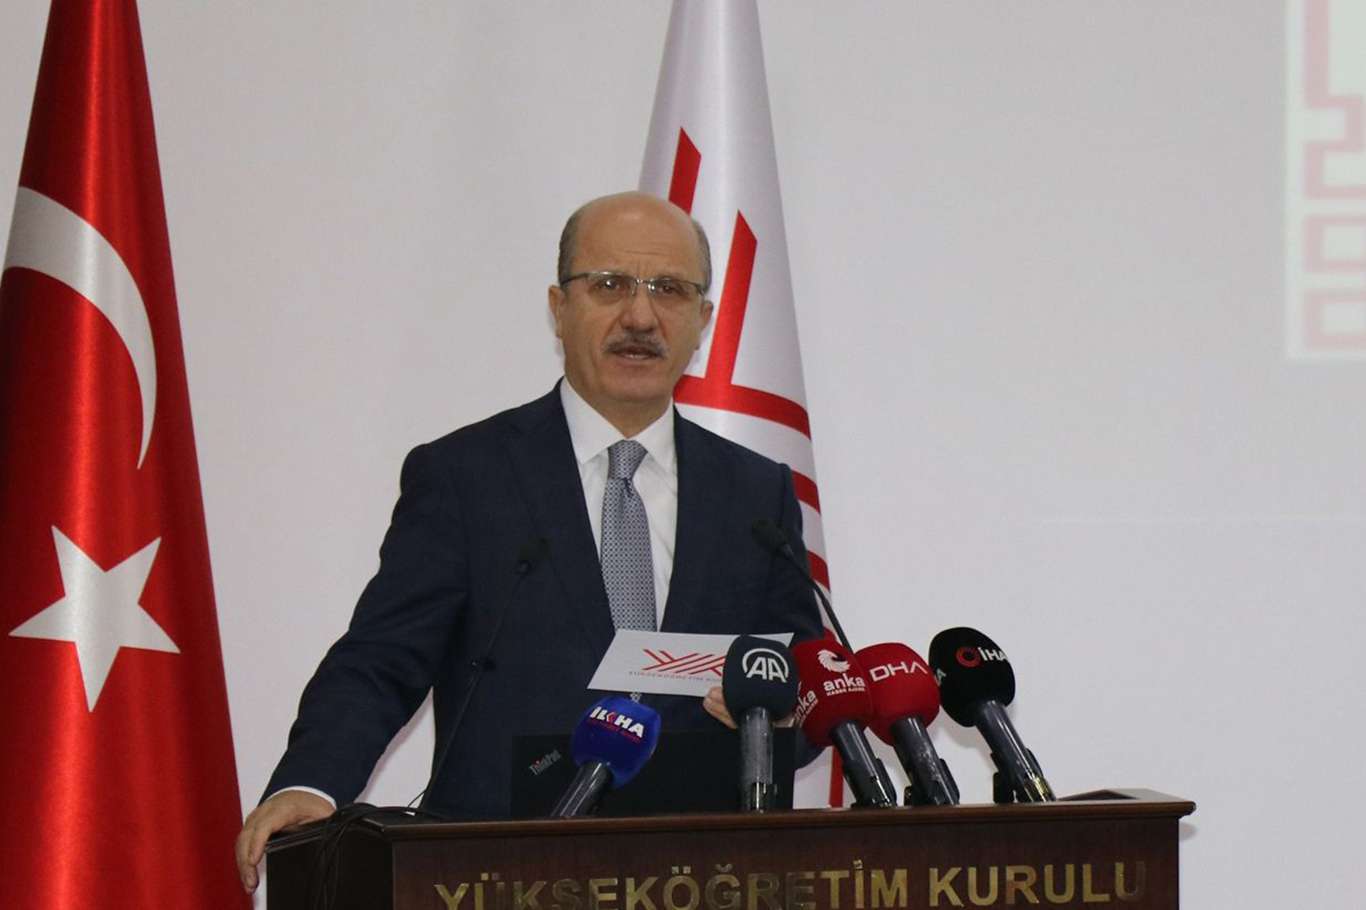  YÖK Başkanı Özvar'dan KPSS açıklaması